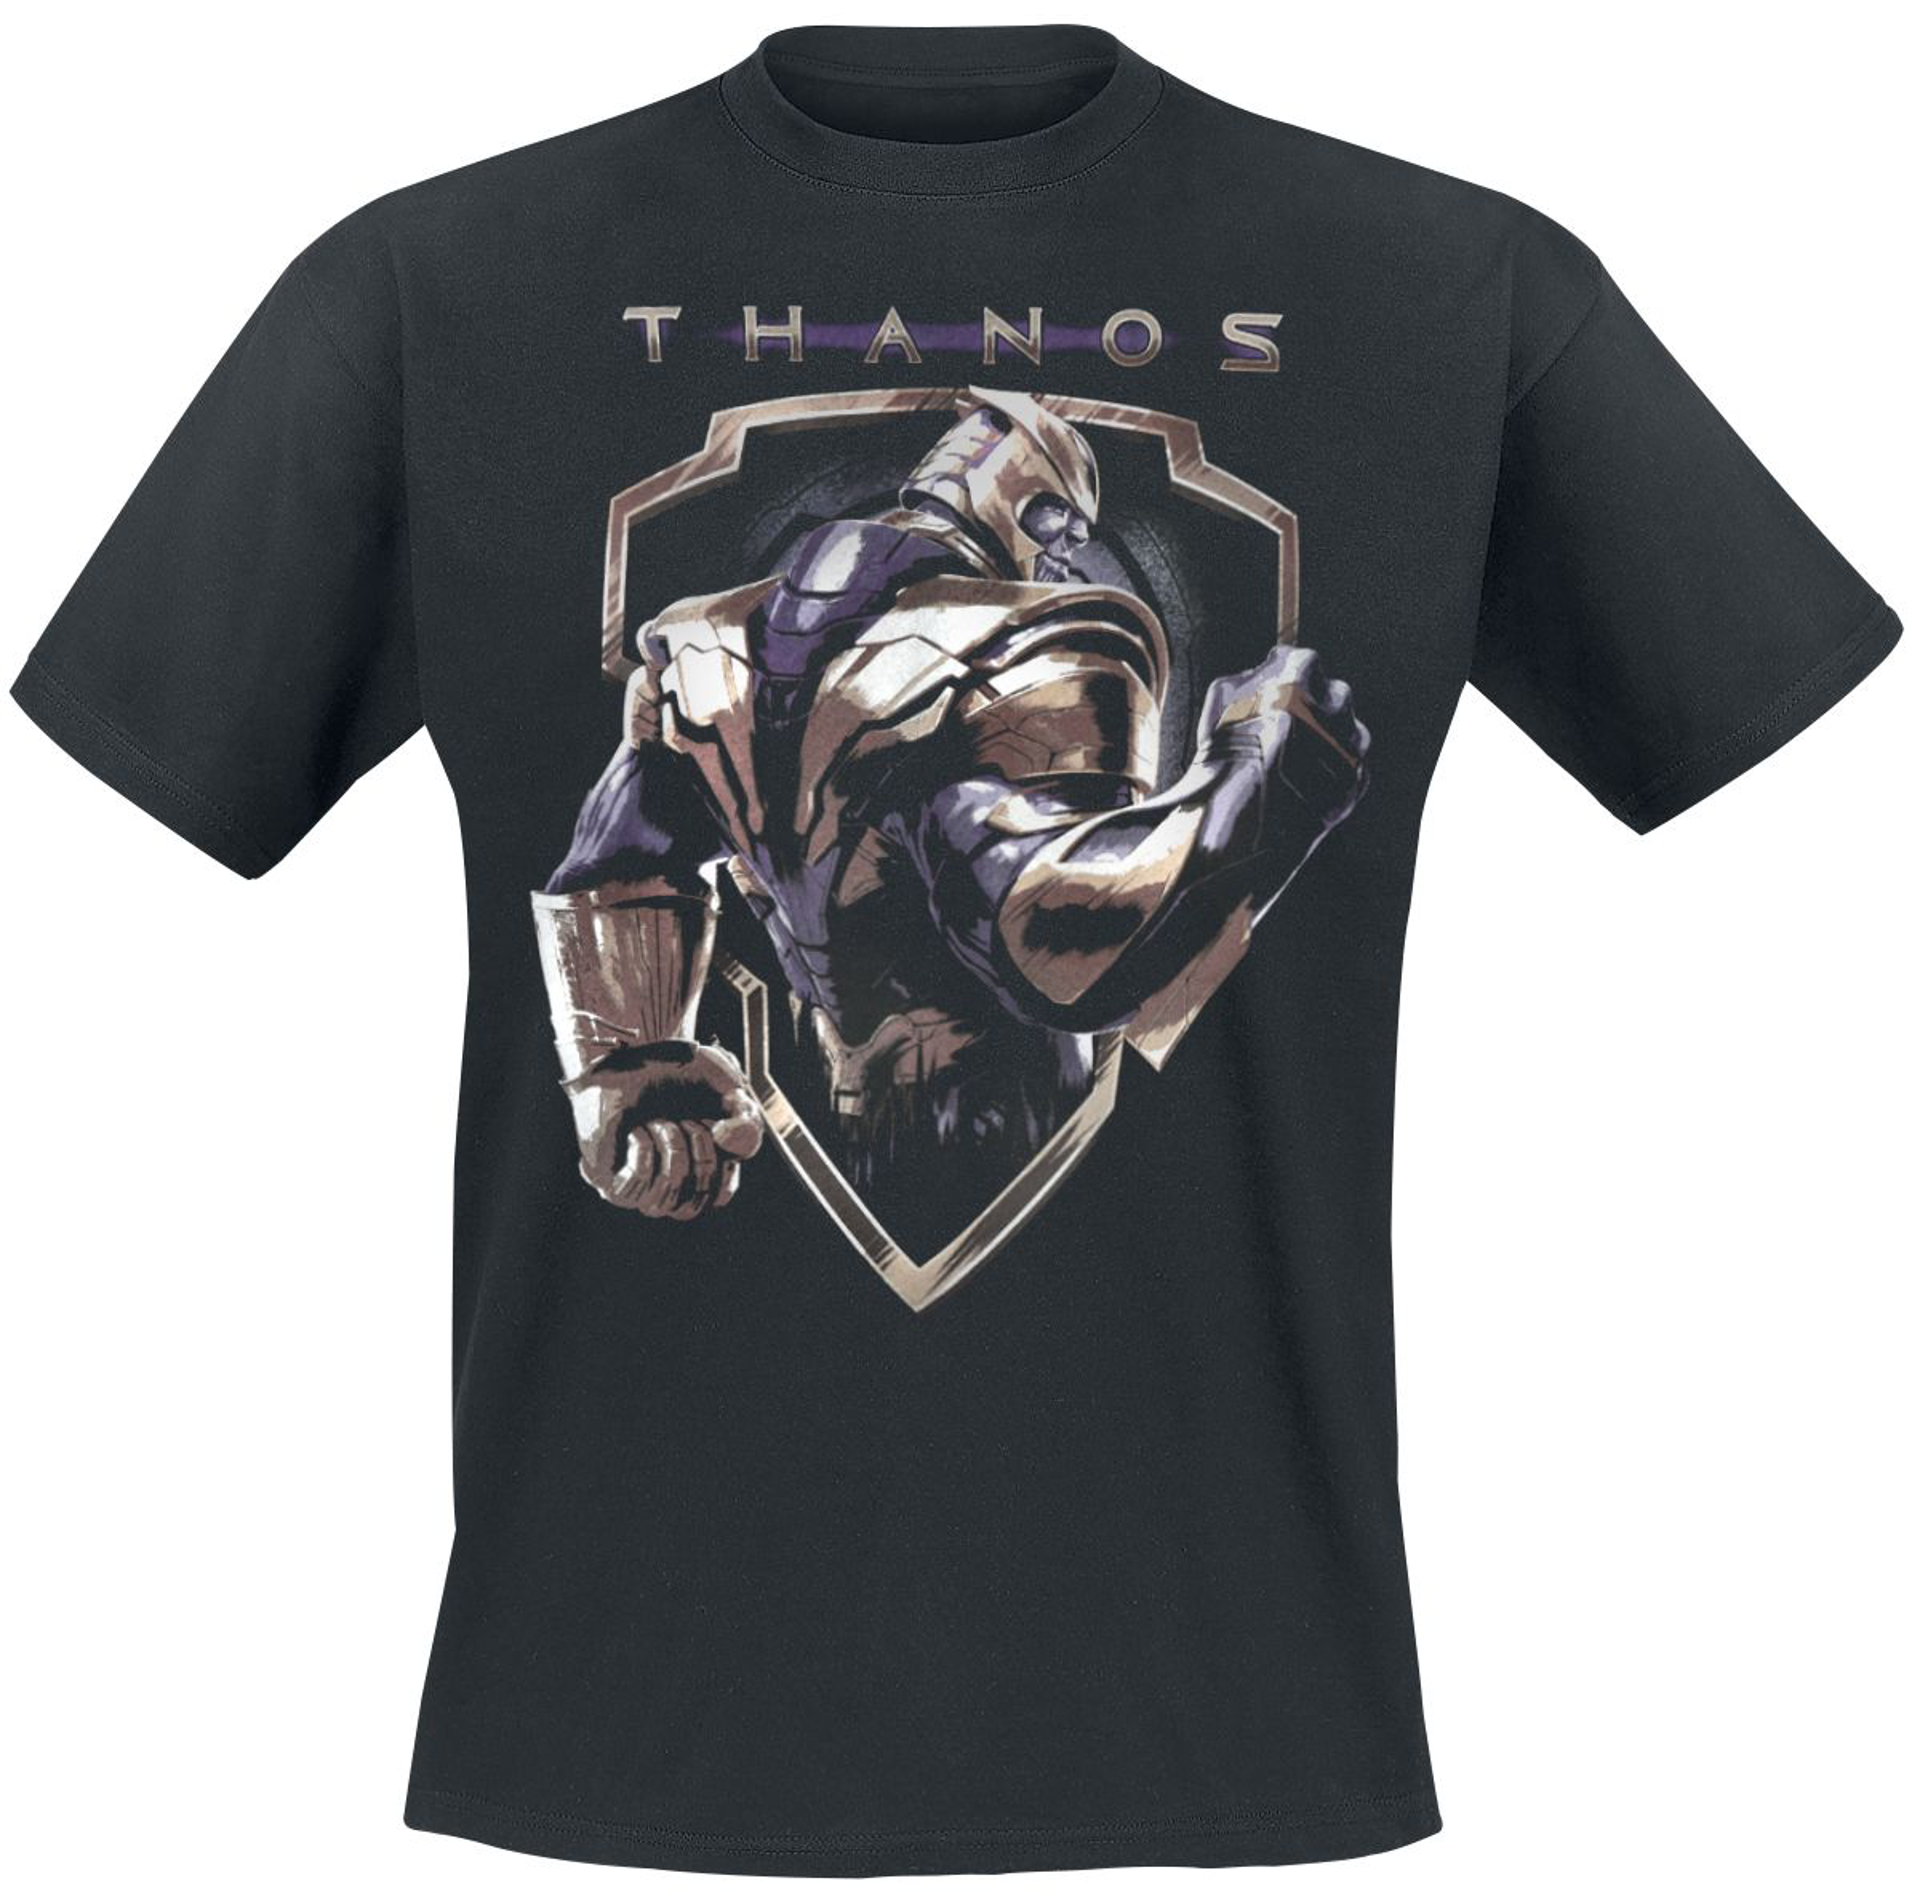 Marvel - Avengers Endgame Thanos Black T-Shirt M